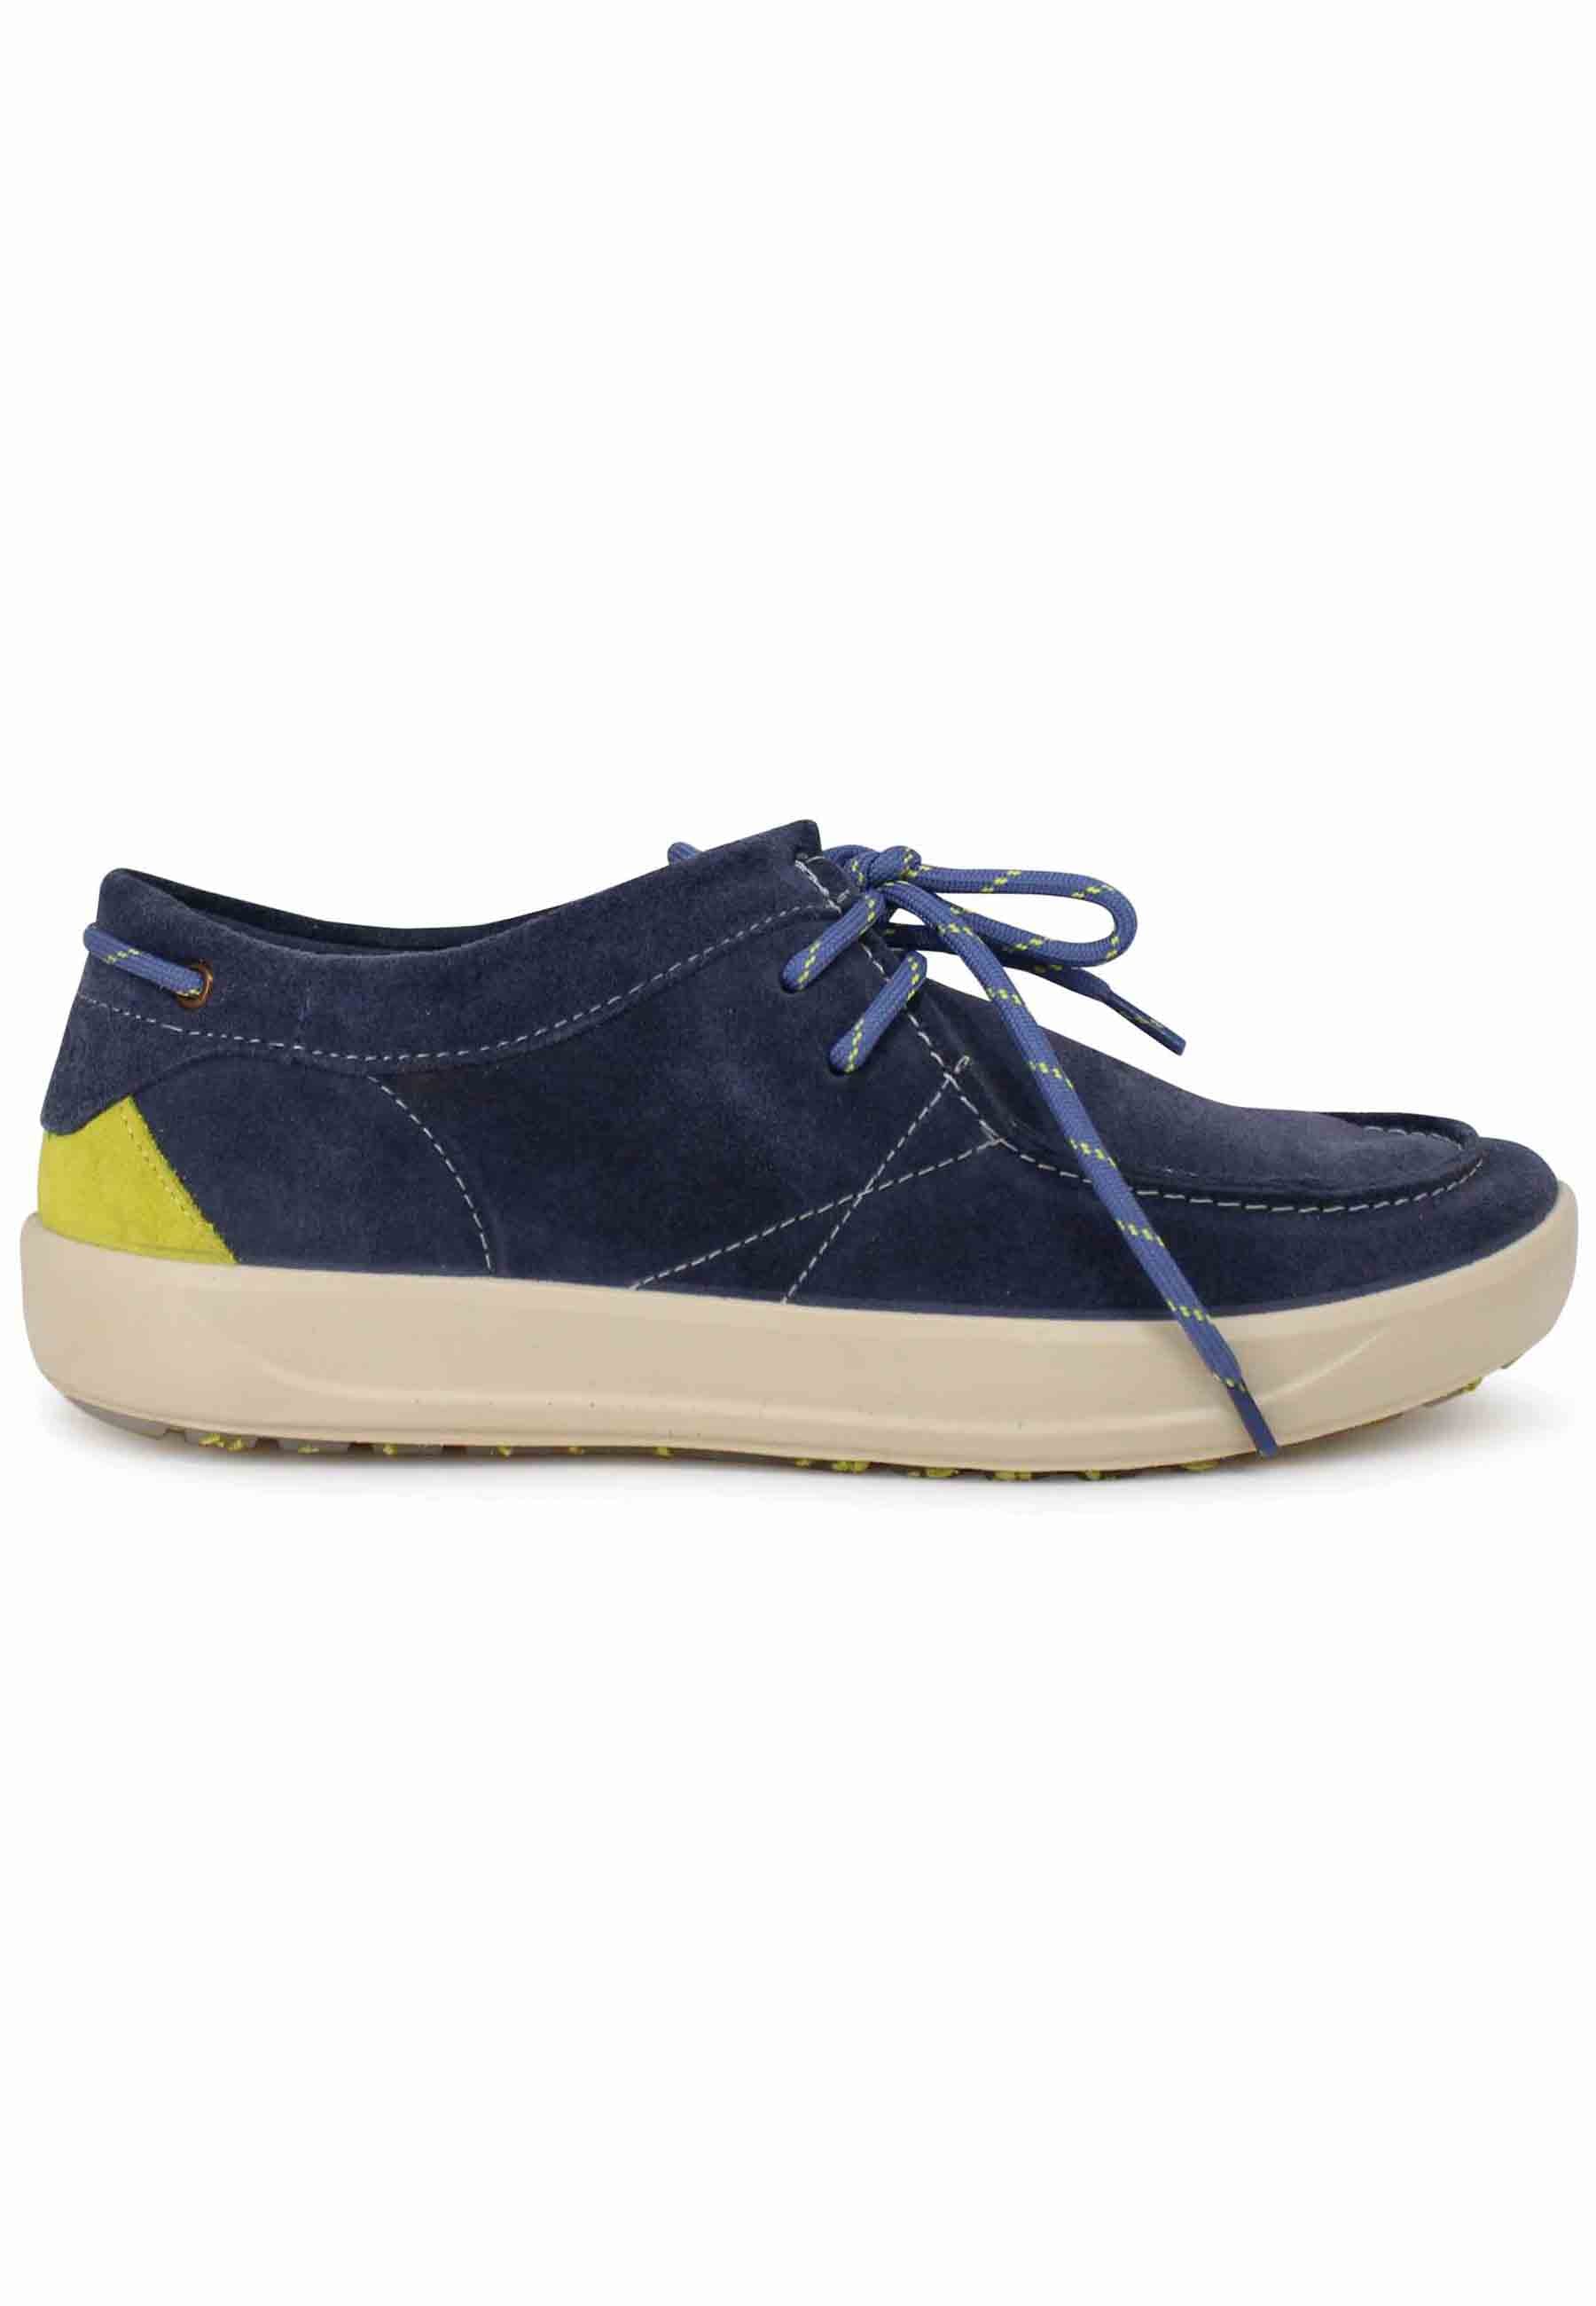 Chaussures à lacets pour hommes Bob Cat en daim bleu avec semelle en caoutchouc